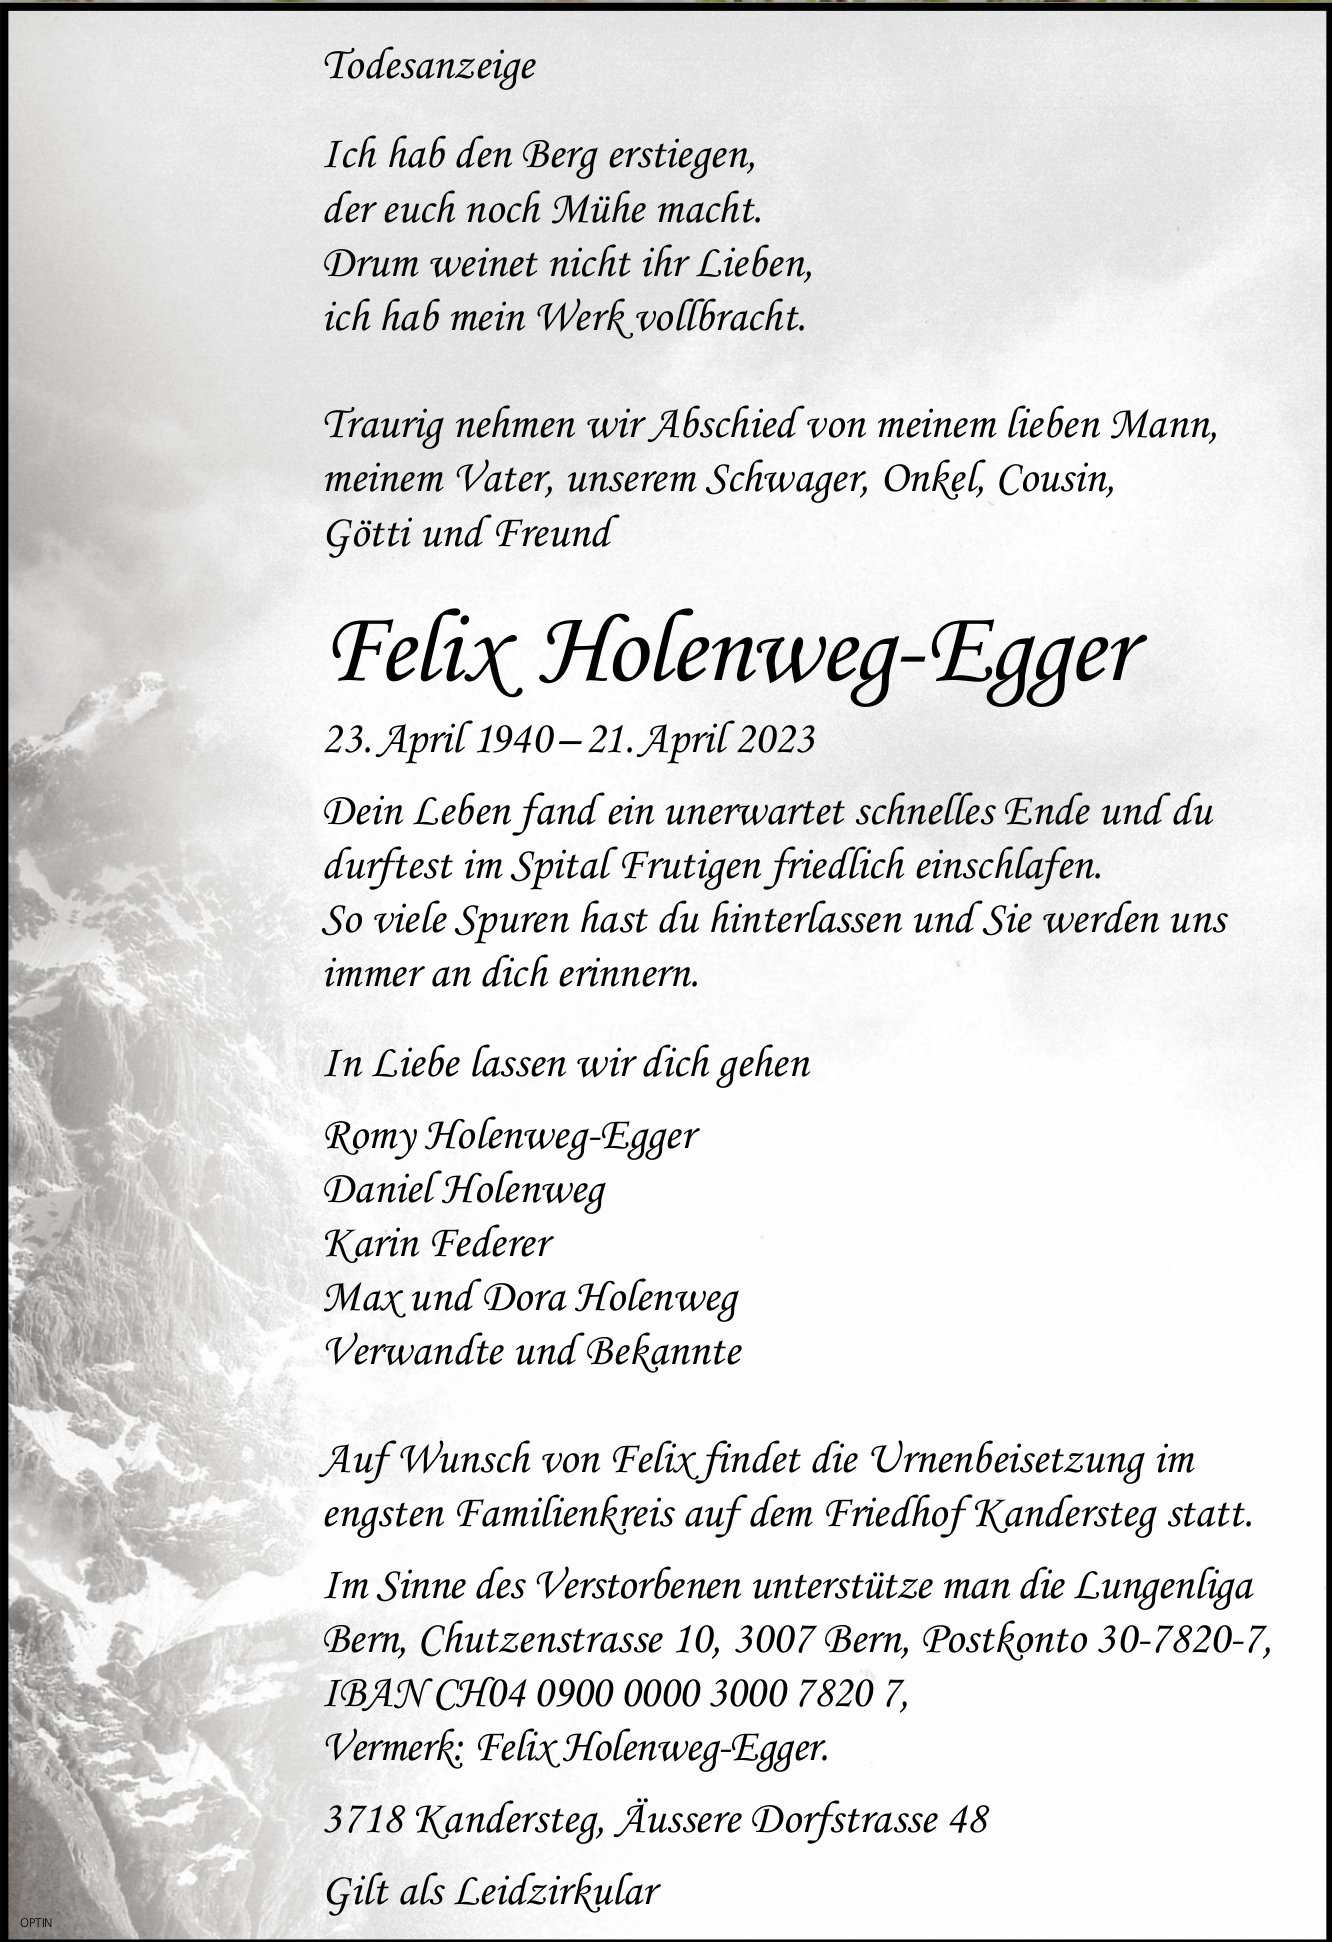 Felix Holenweg-Egger, April 2023 / TA